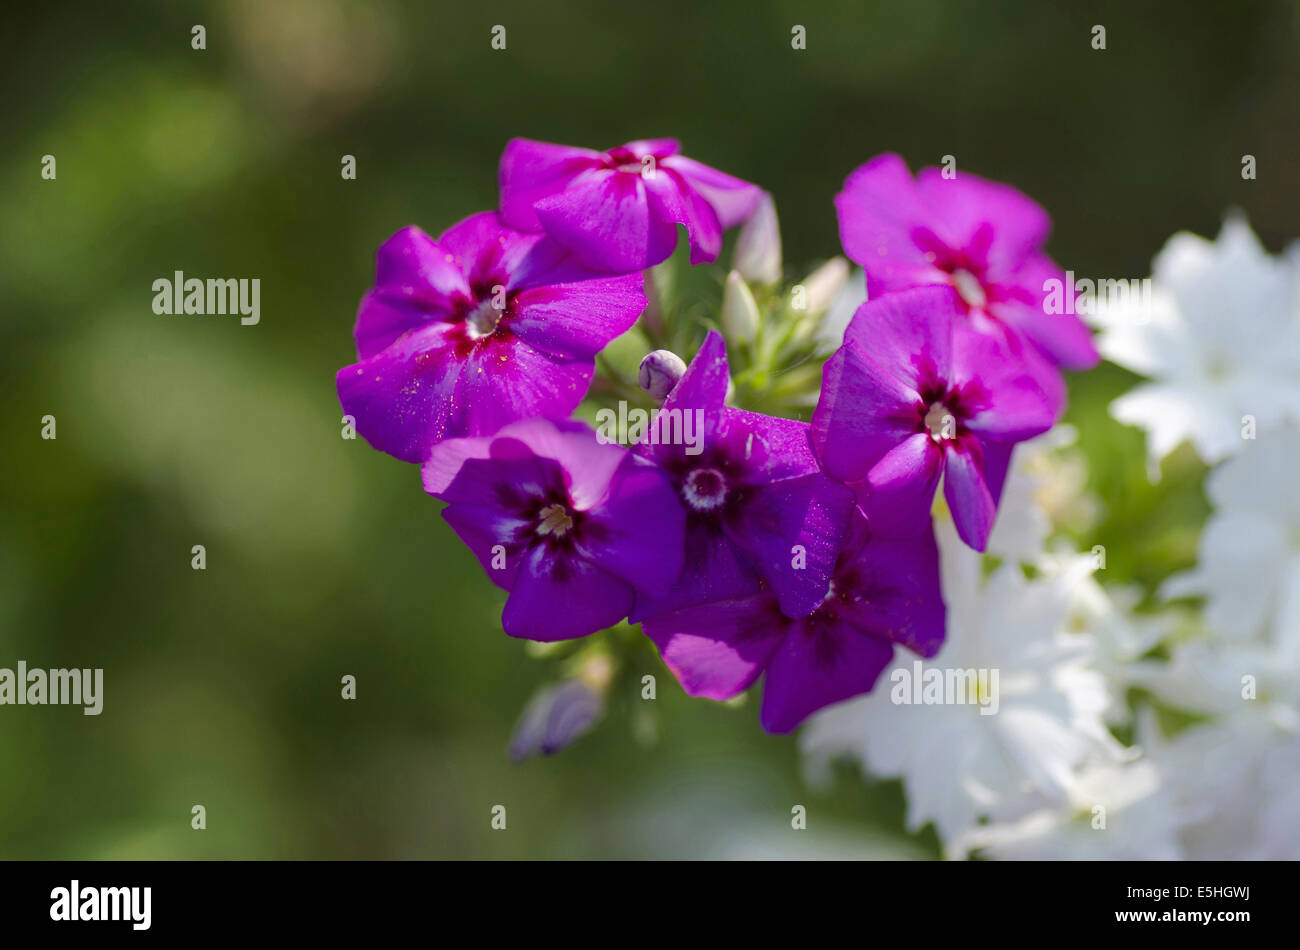 Eine Reihe von kleinen violetten Blüten, Harish-Chandra Research Institut Campus, Allahabad, Uttar Pradesh, Indien Stockfoto